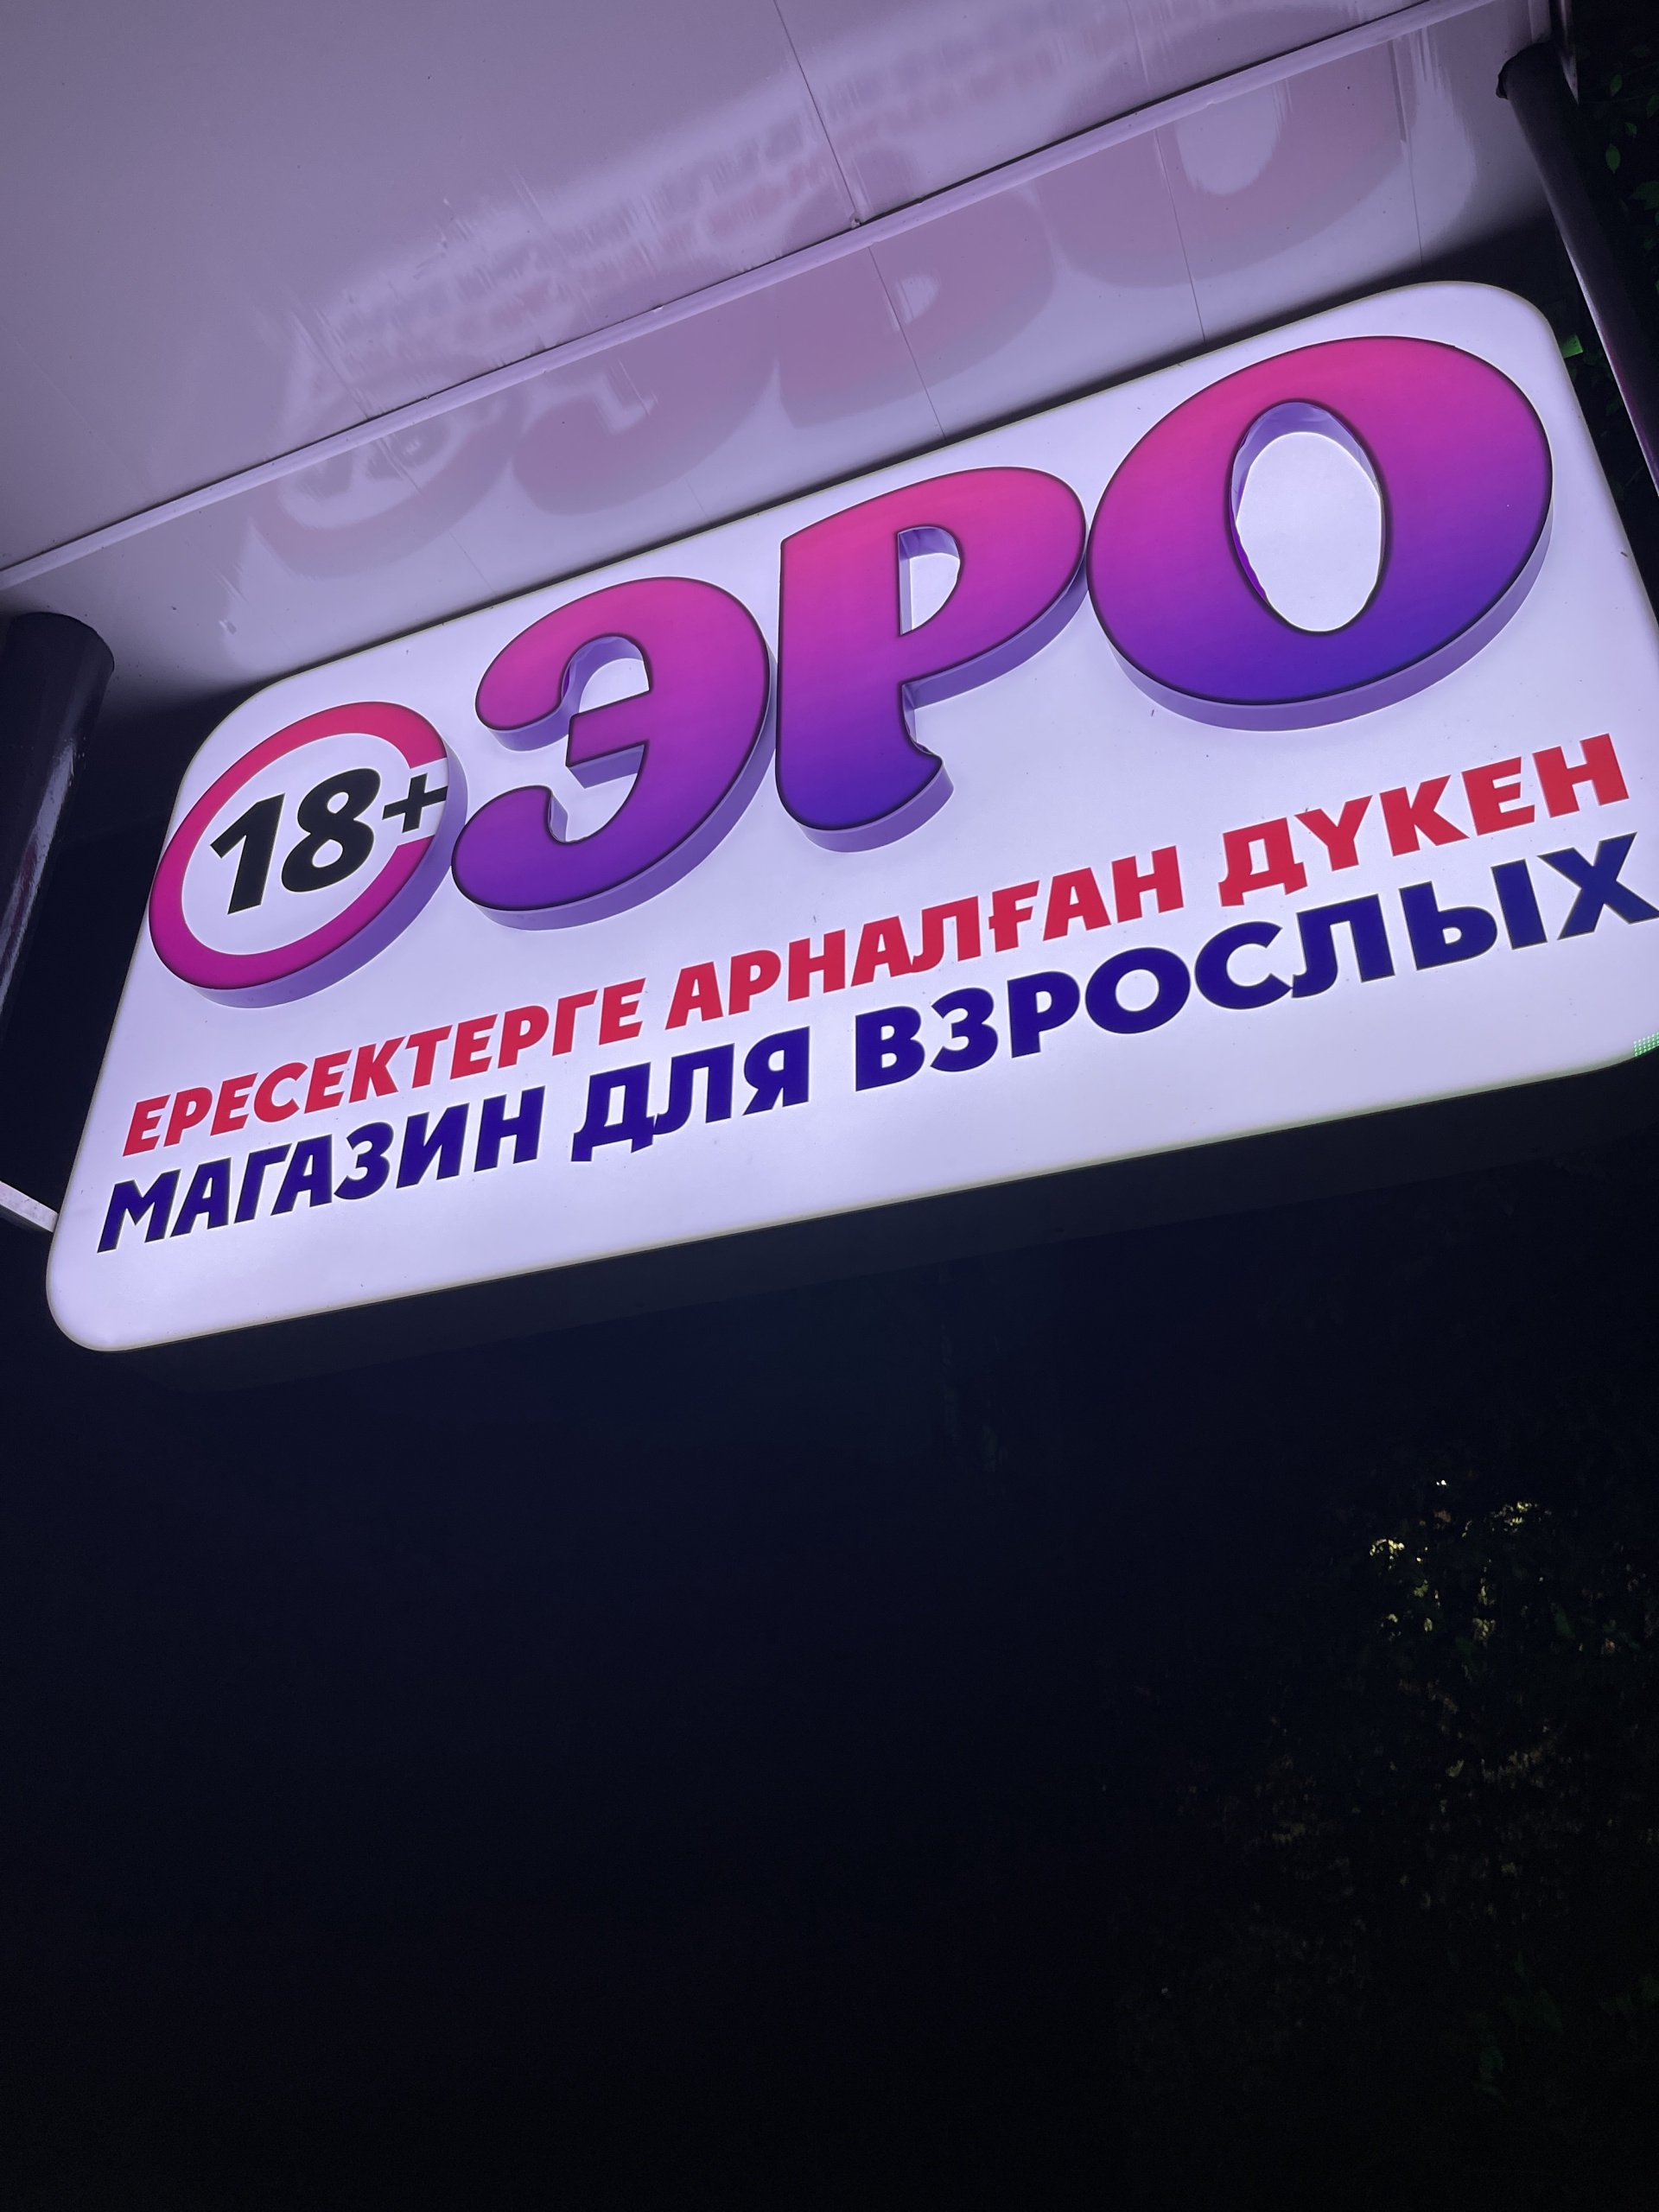 FlirtShop.kz — лучший секс-шоп в Казахстане